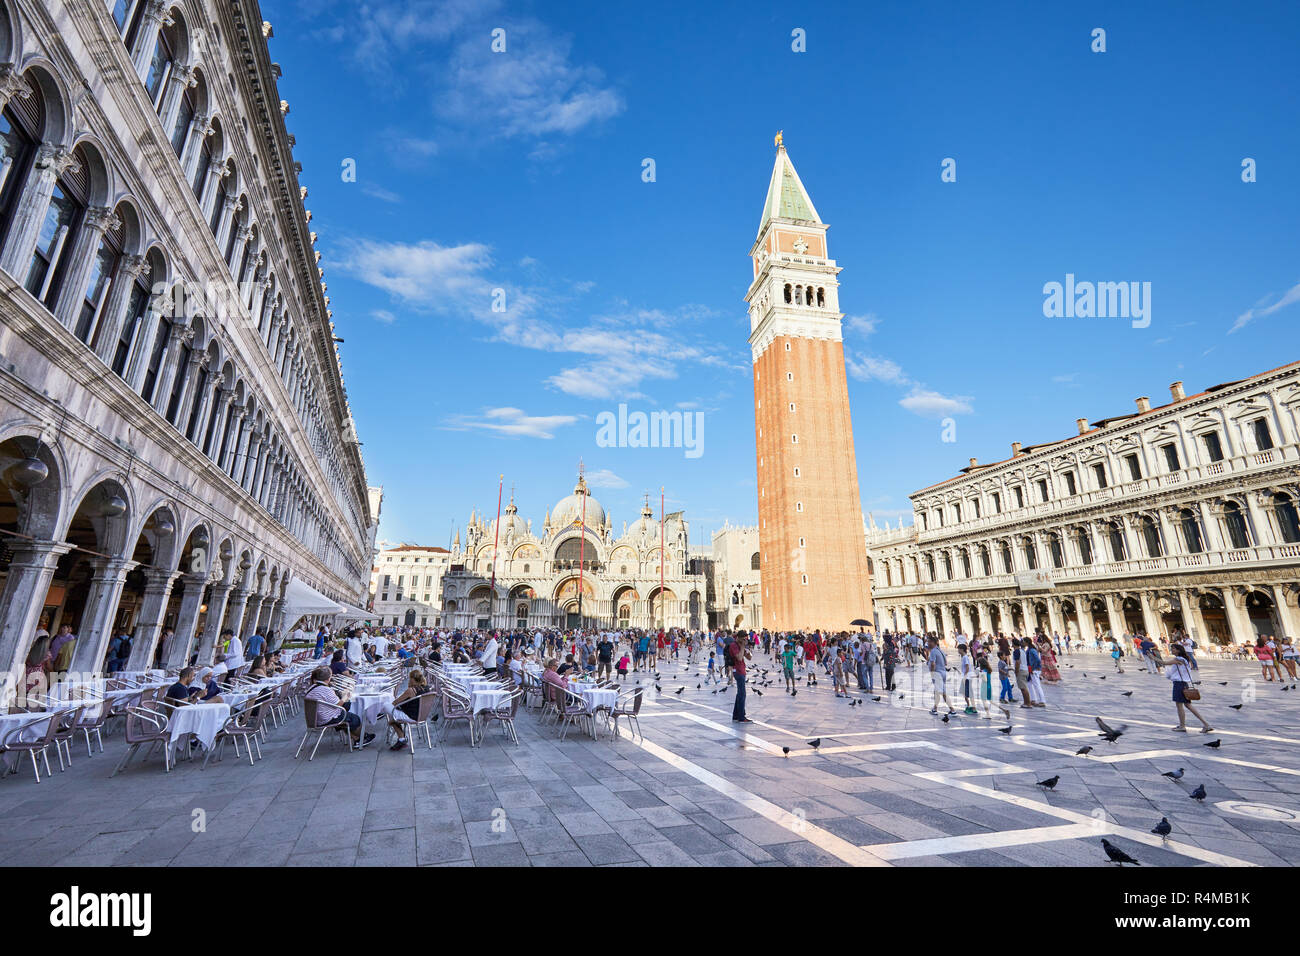 Venise, Italie - 12 août 2017 : la place San Marco avec trottoir et que les gens en marche, le ciel bleu dans une journée ensoleillée en Italie Banque D'Images